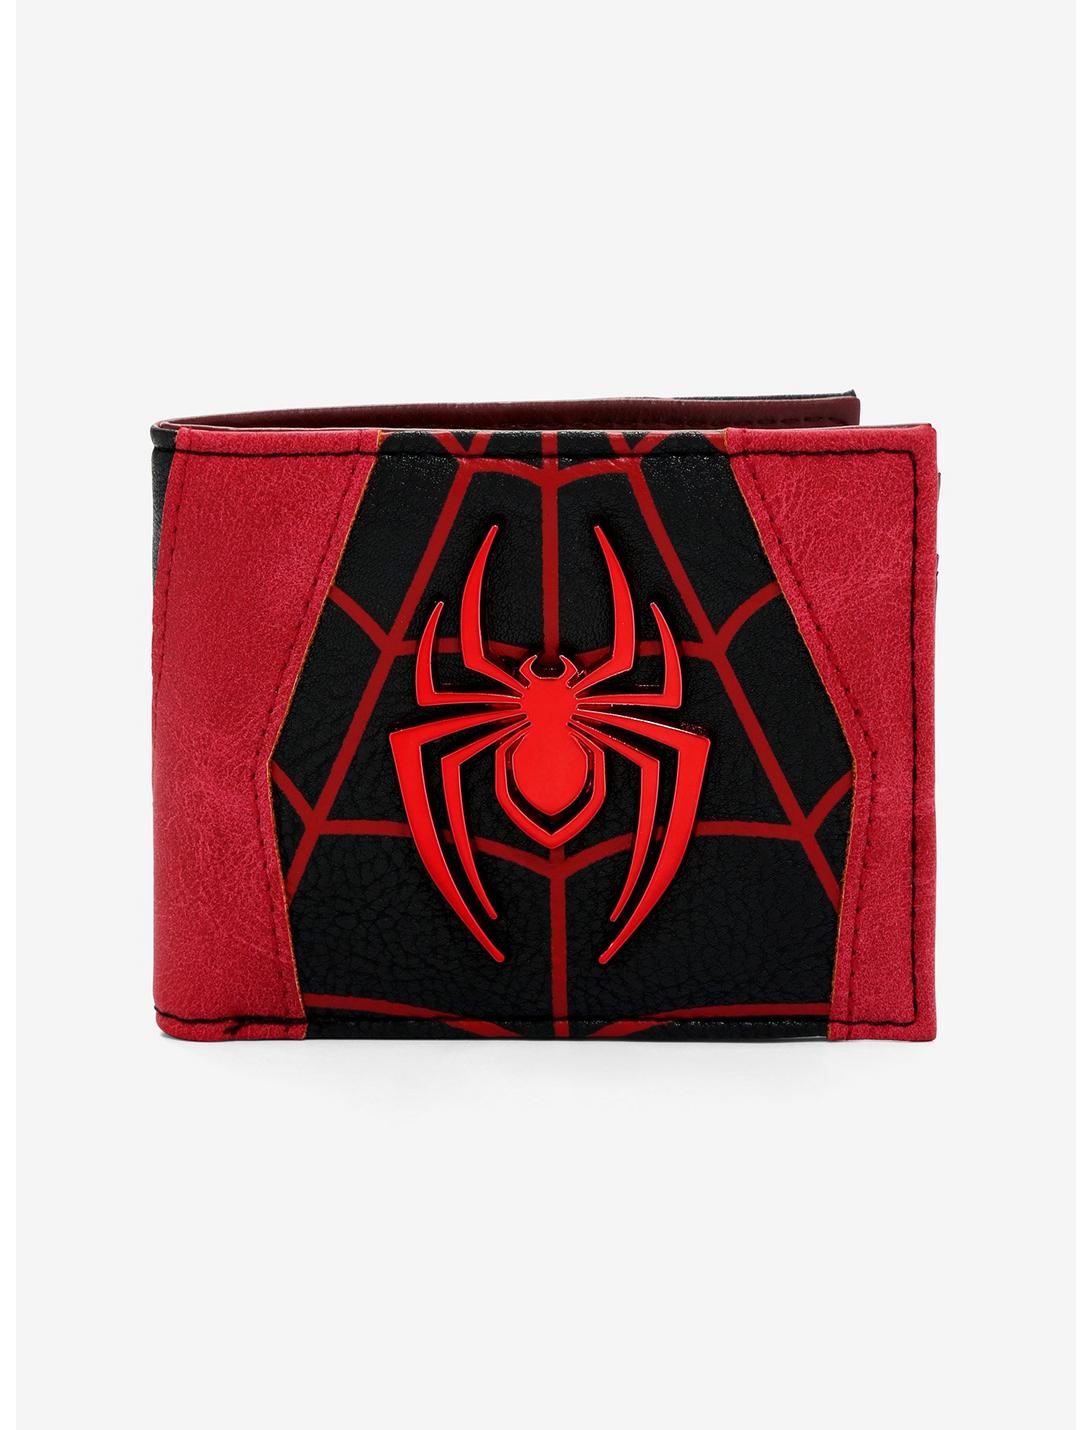 Marvel Spider-Man Miles Morales Spider Logo Bifold Wallet, , hi-res